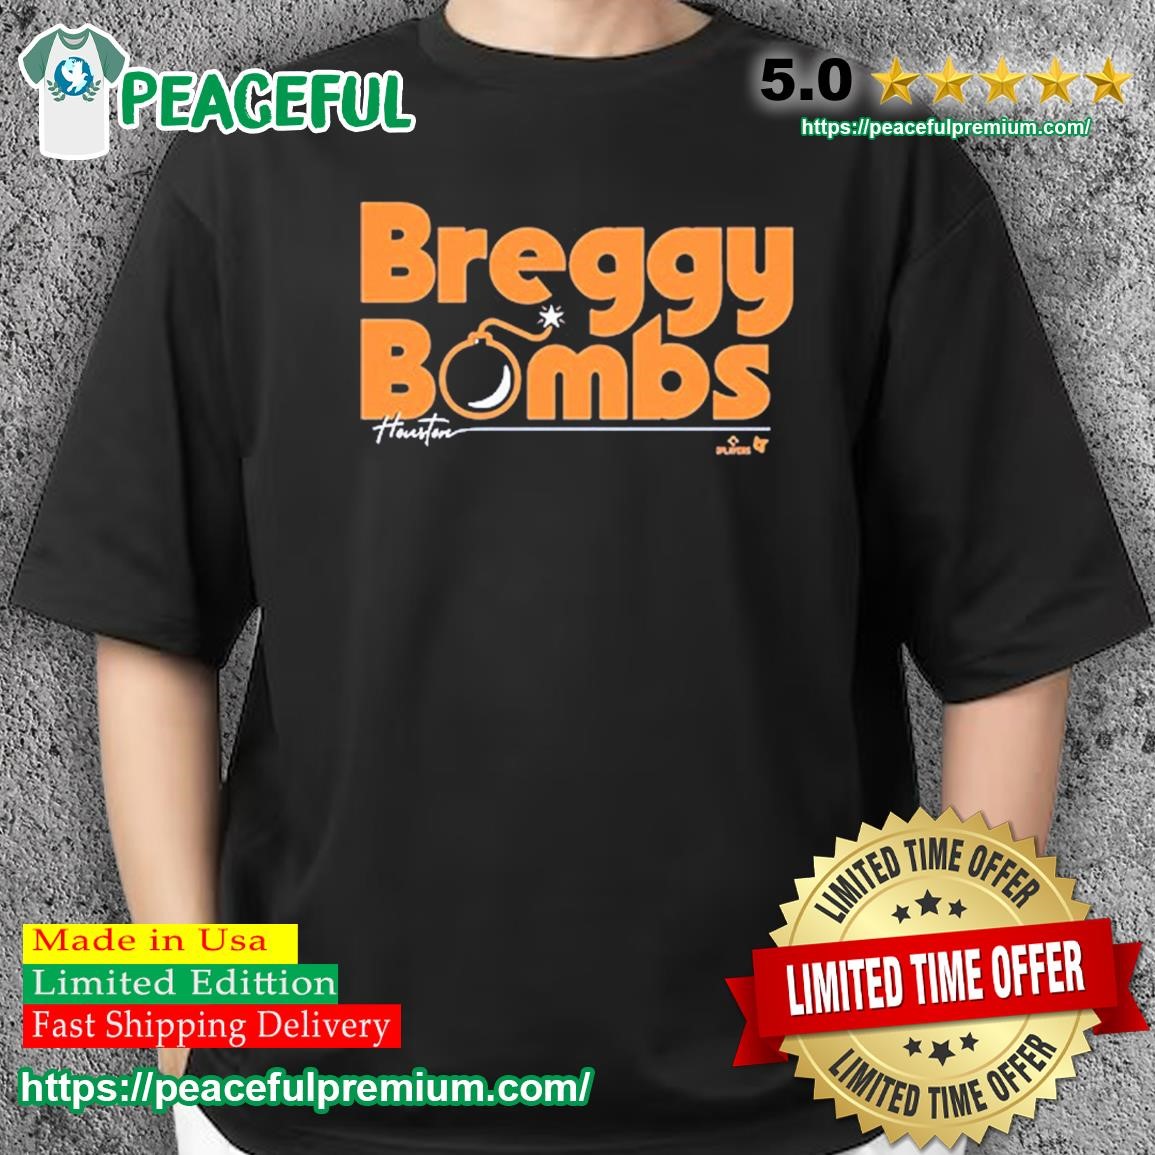 bregman shirt